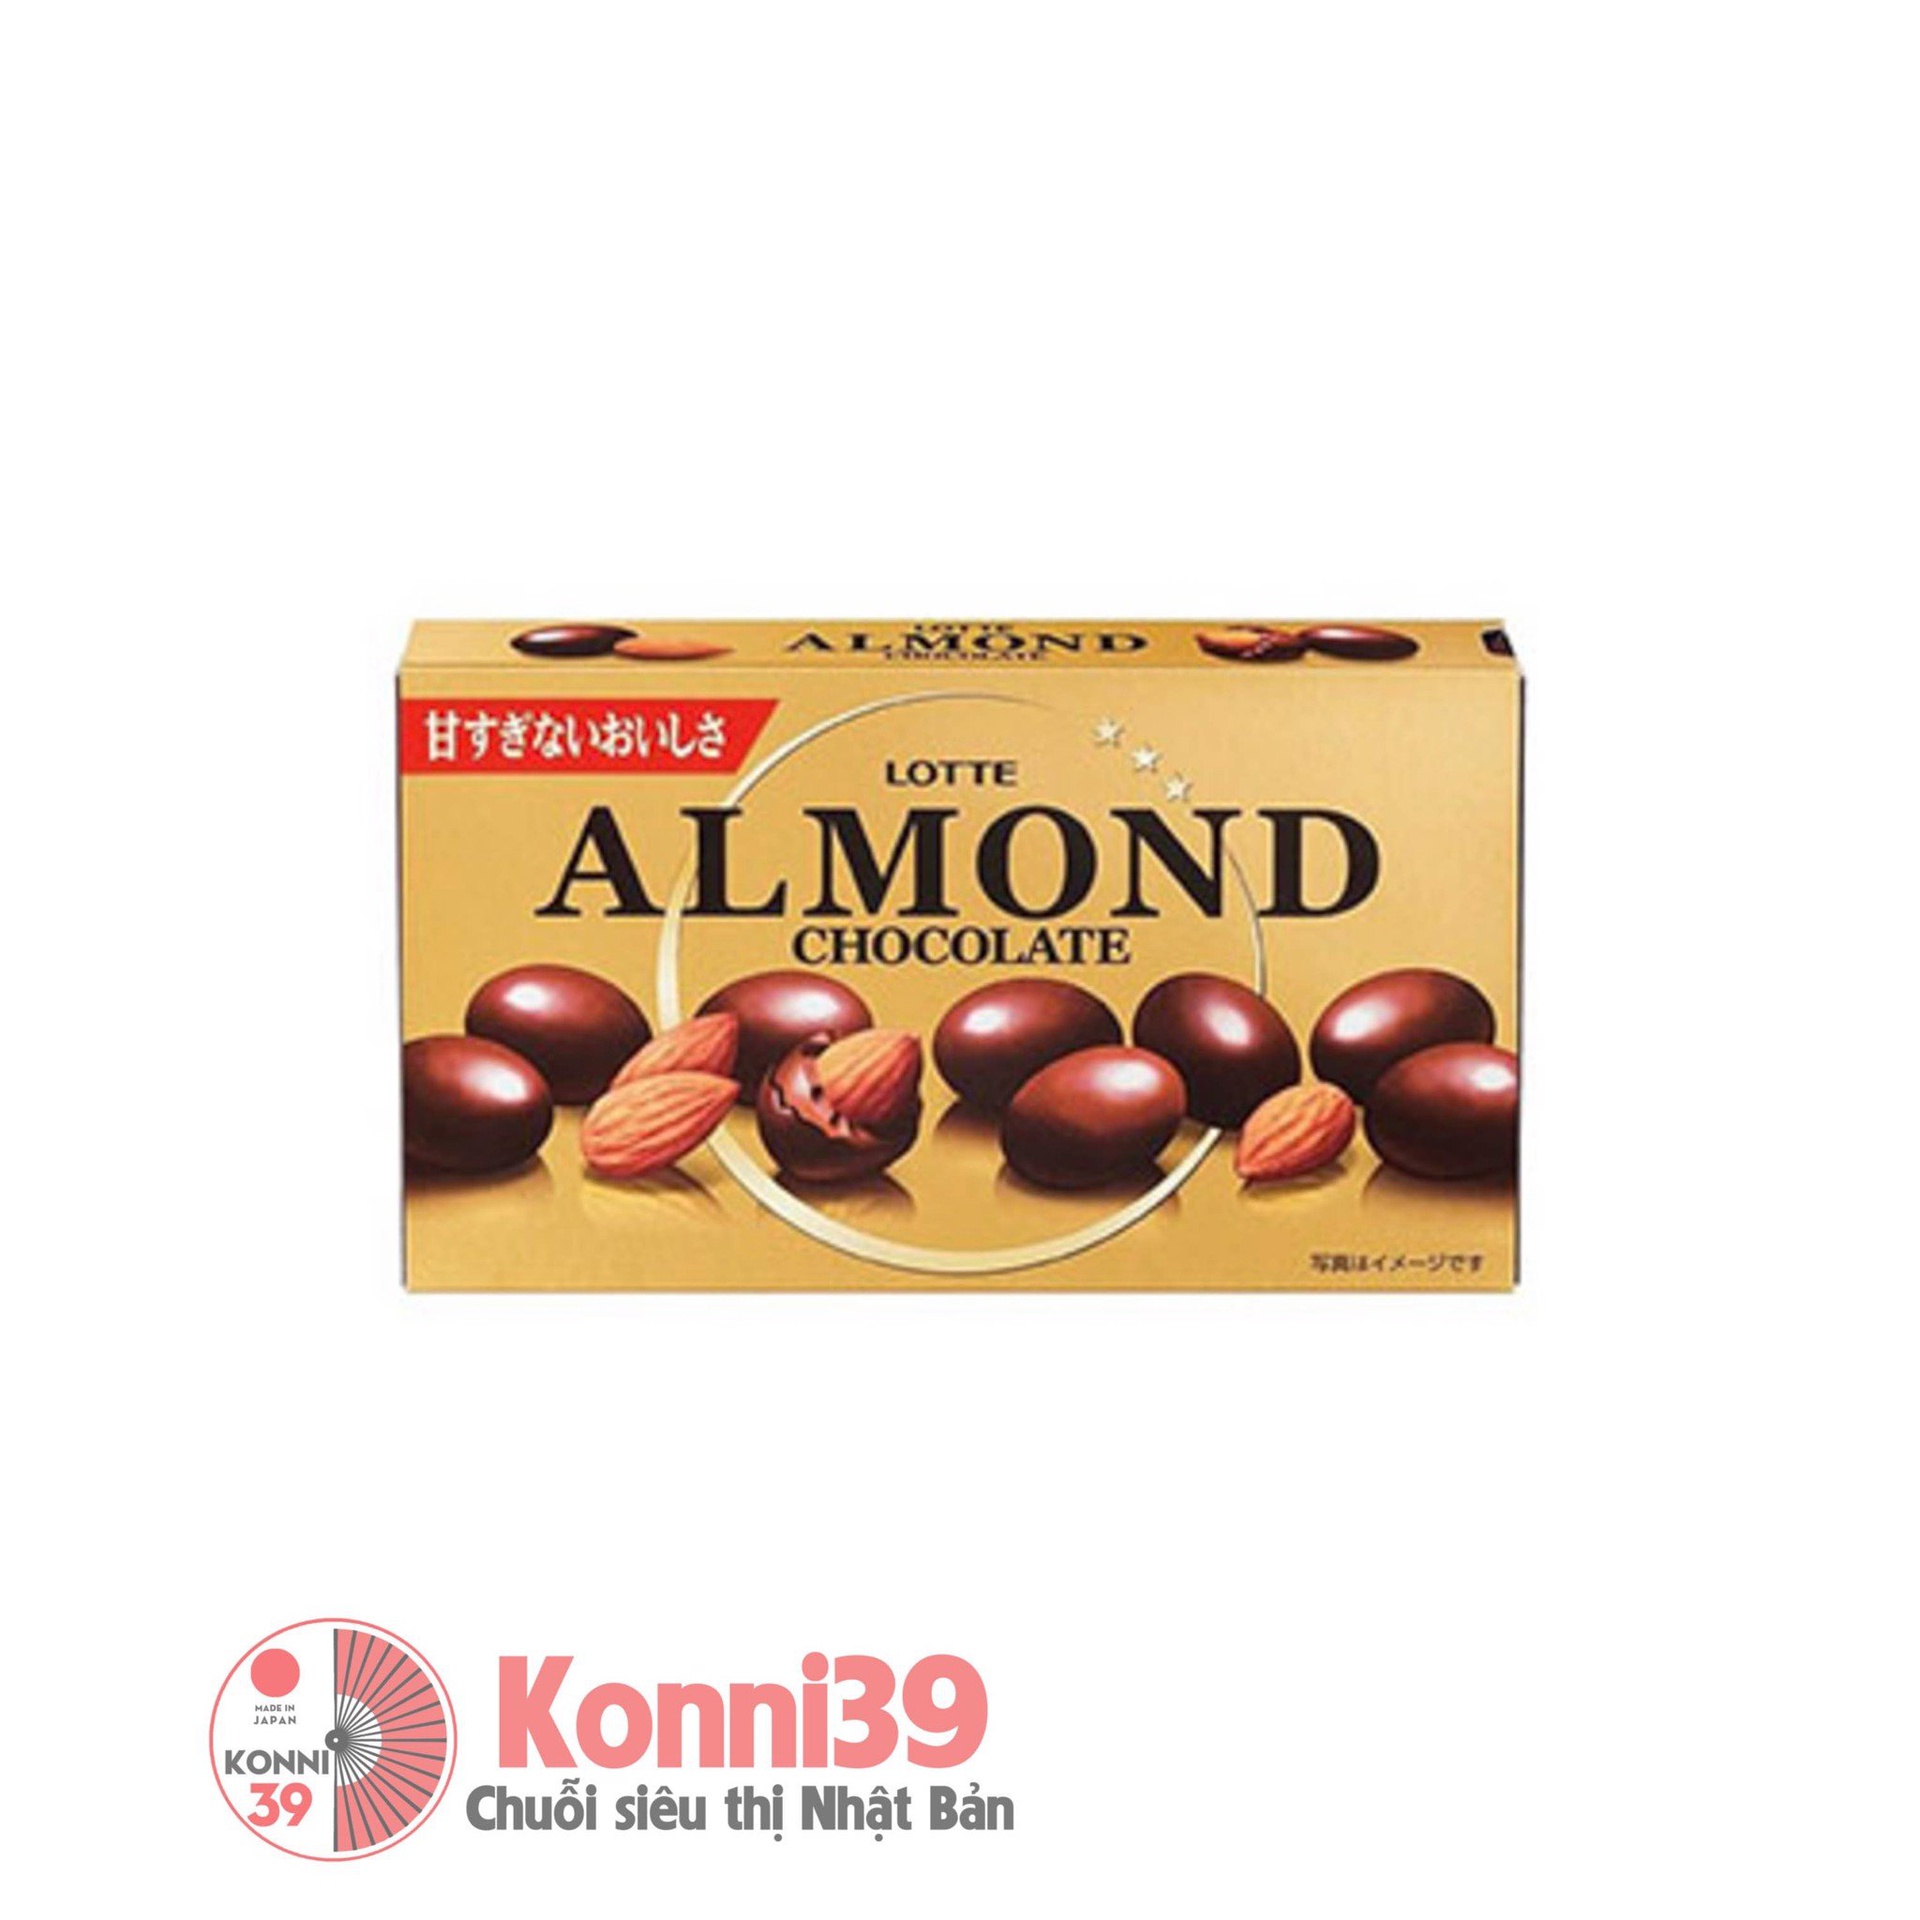 Socola Lotte Almond Chocolate nhân hạnh nhân 86g